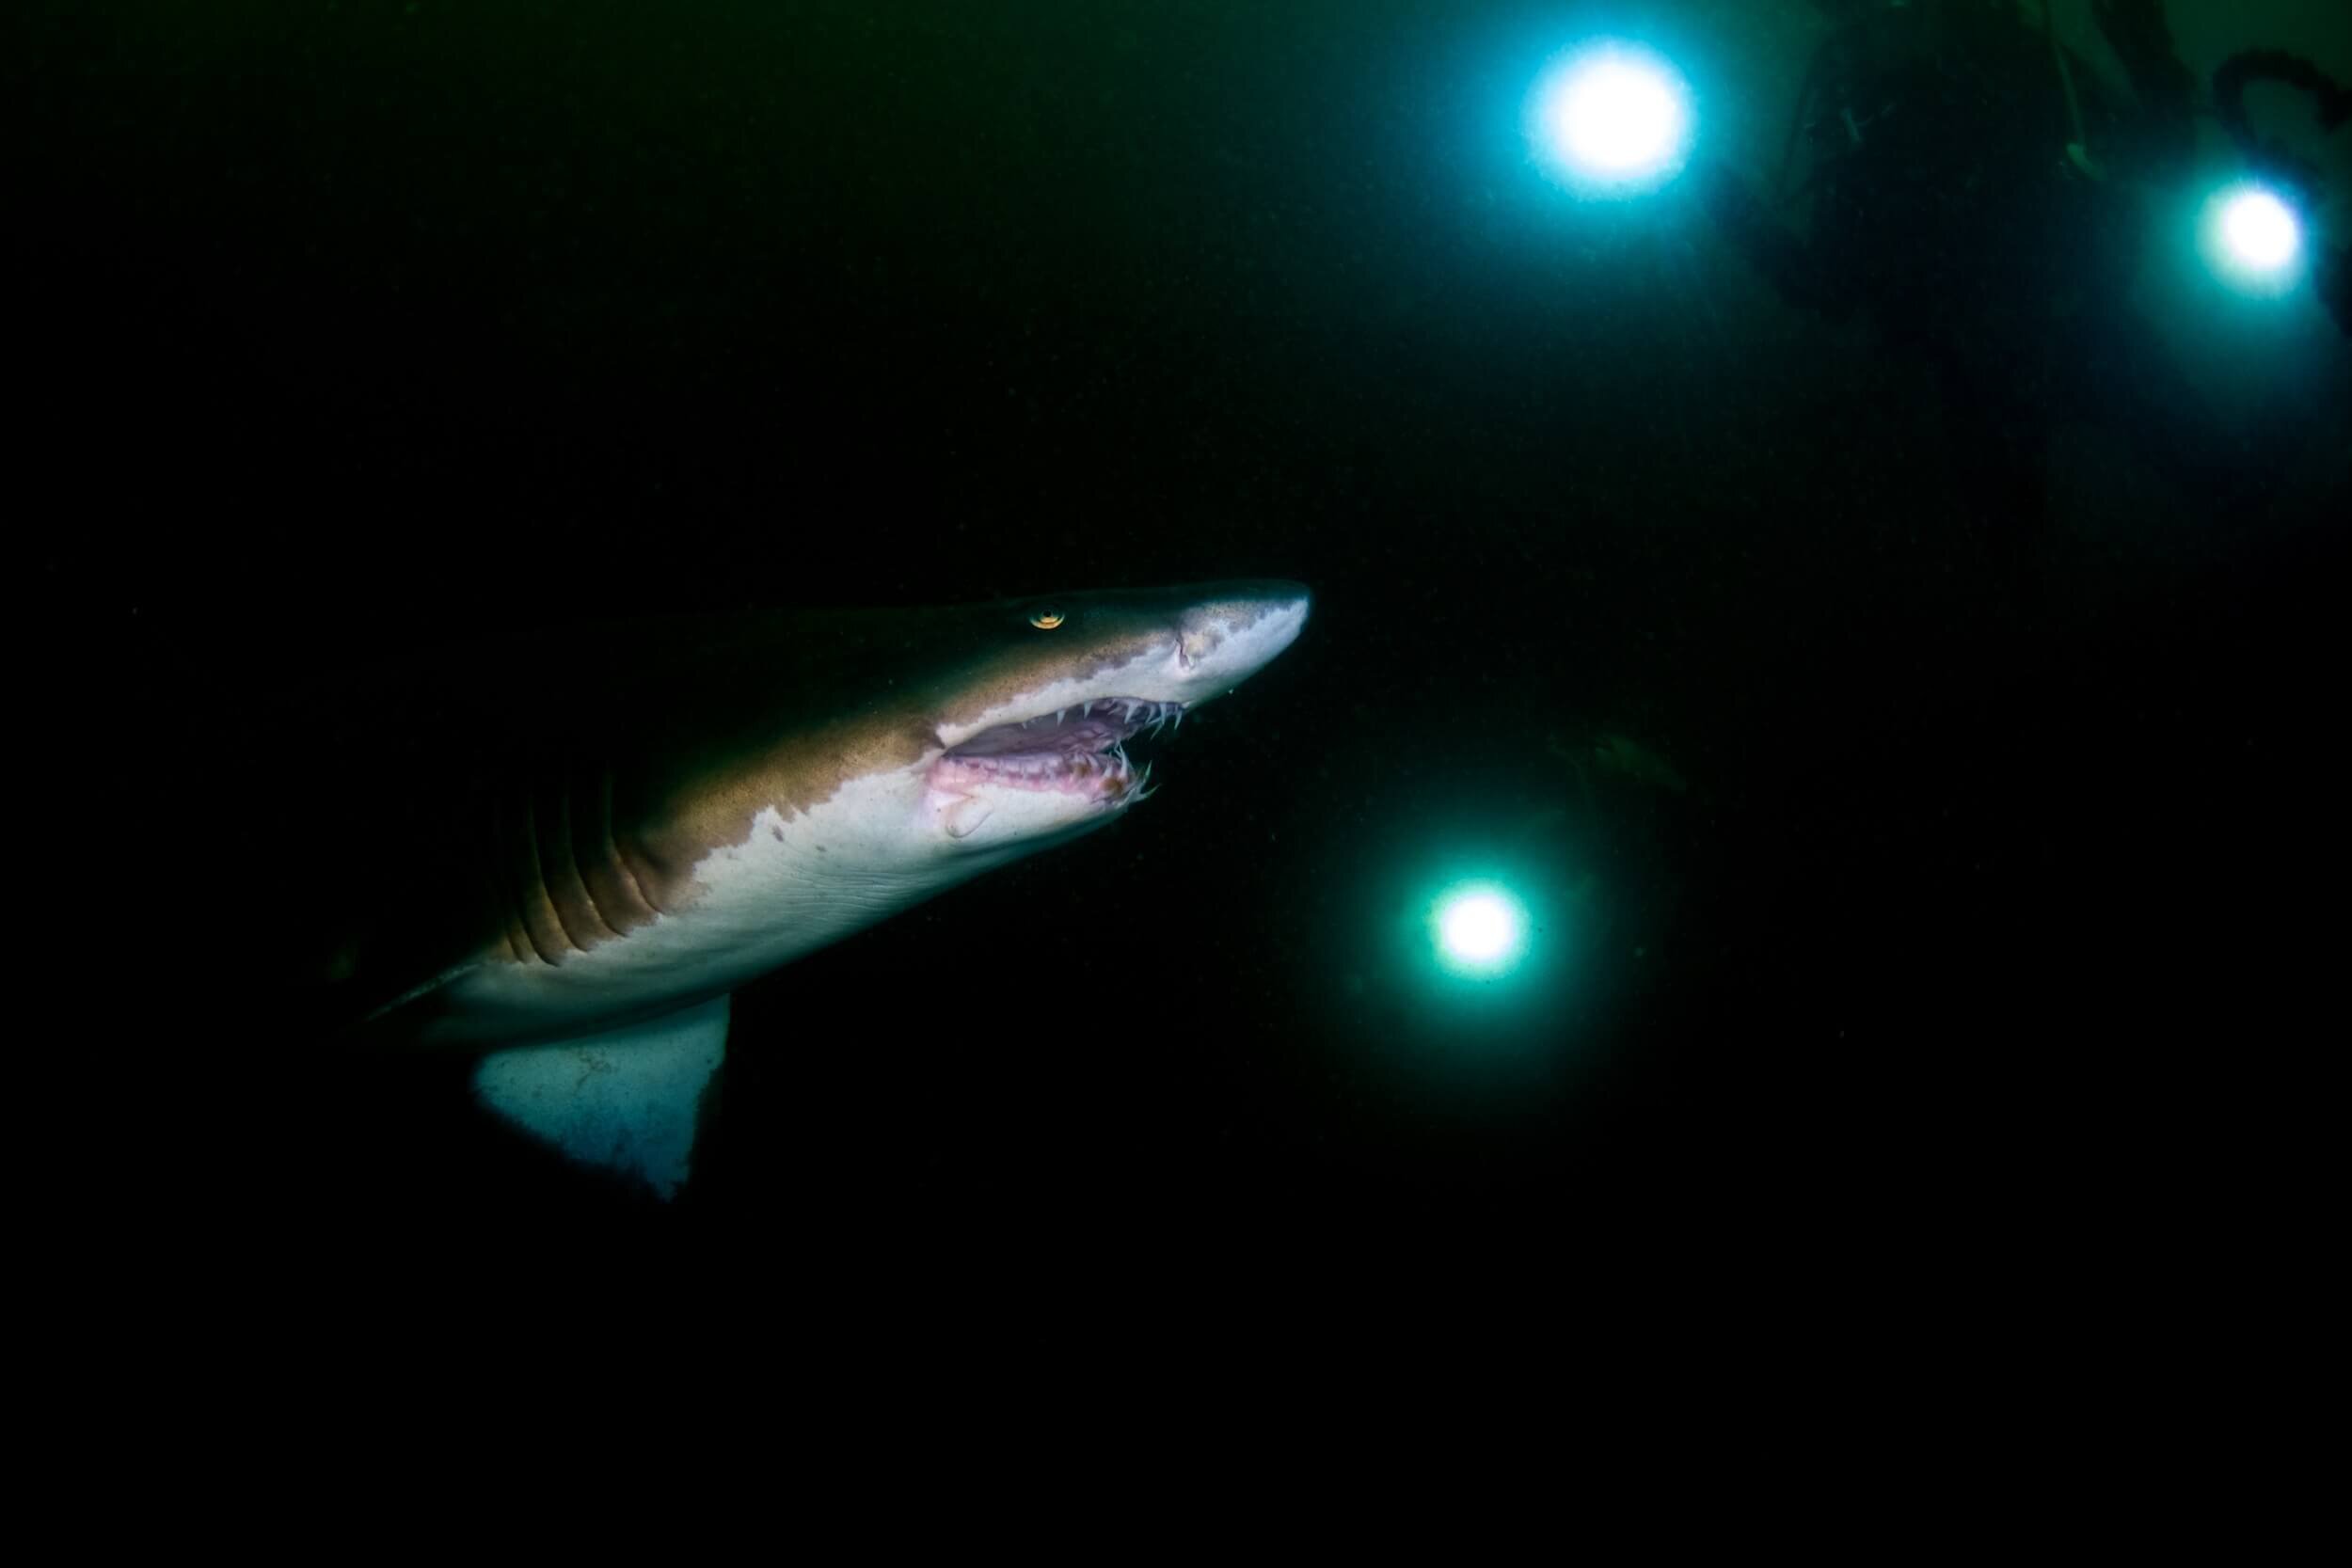  Las intensas luces y sombras de esta imagen son dignas del mejor Caravaggio. Tiburón tigre de arena ( Carcharias taurus ) en el  “Cementerio del Atlántico”, en Carolina del Norte.  